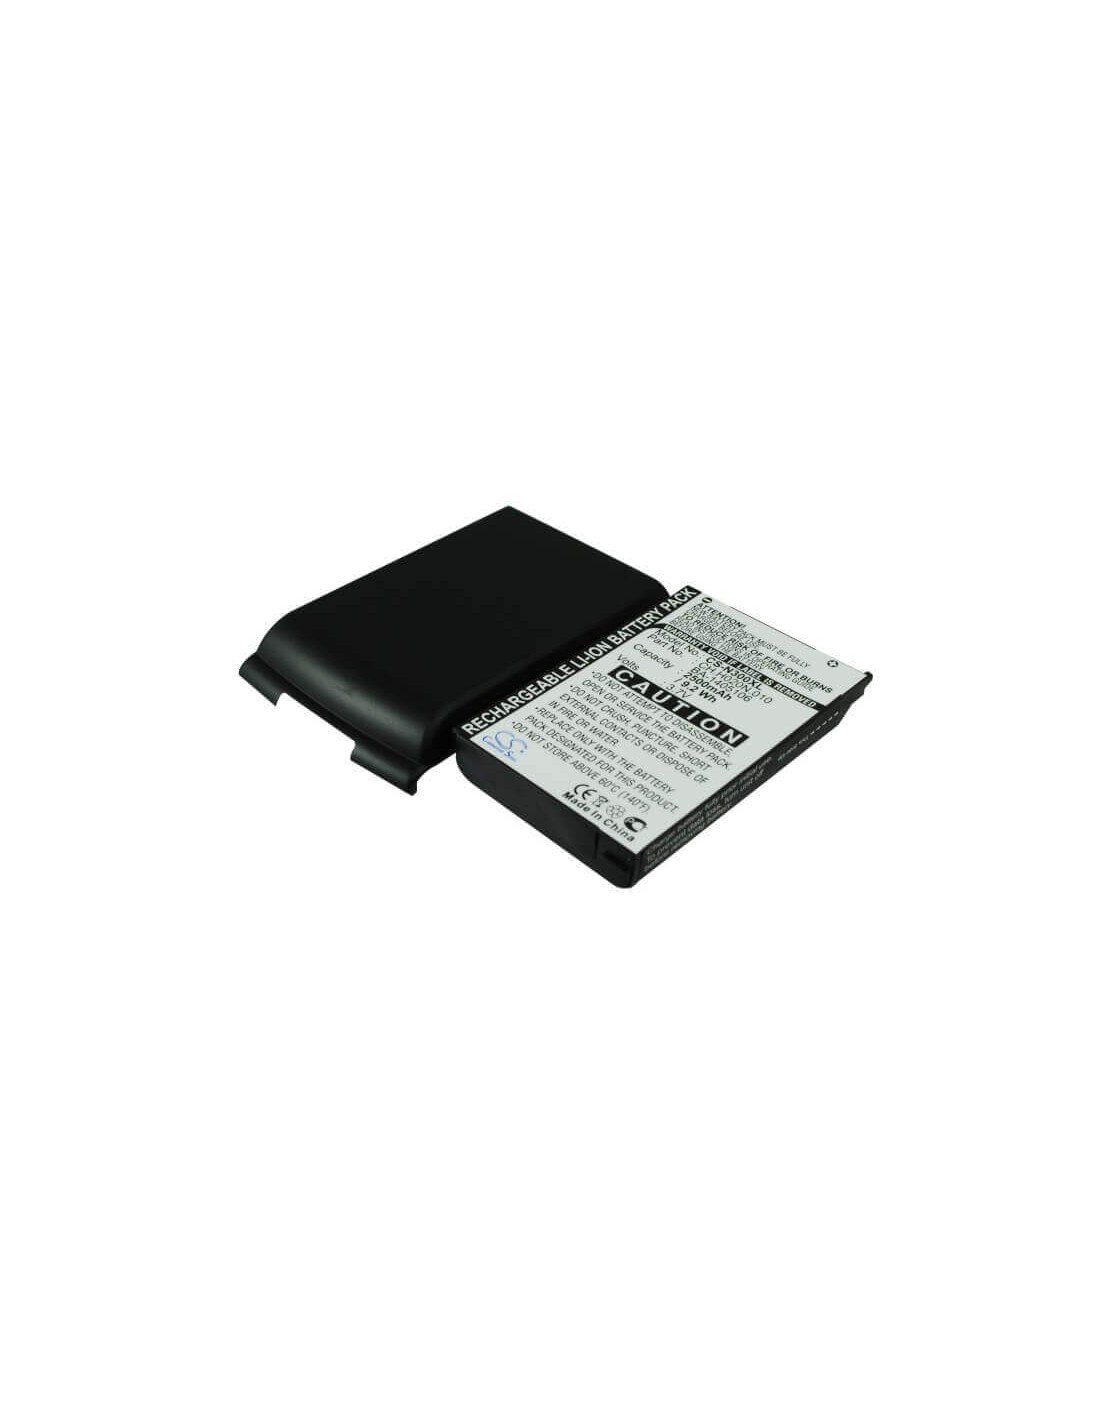 Battery for Acer N300, N310, N311 3.7V, 2500mAh - 9.25Wh